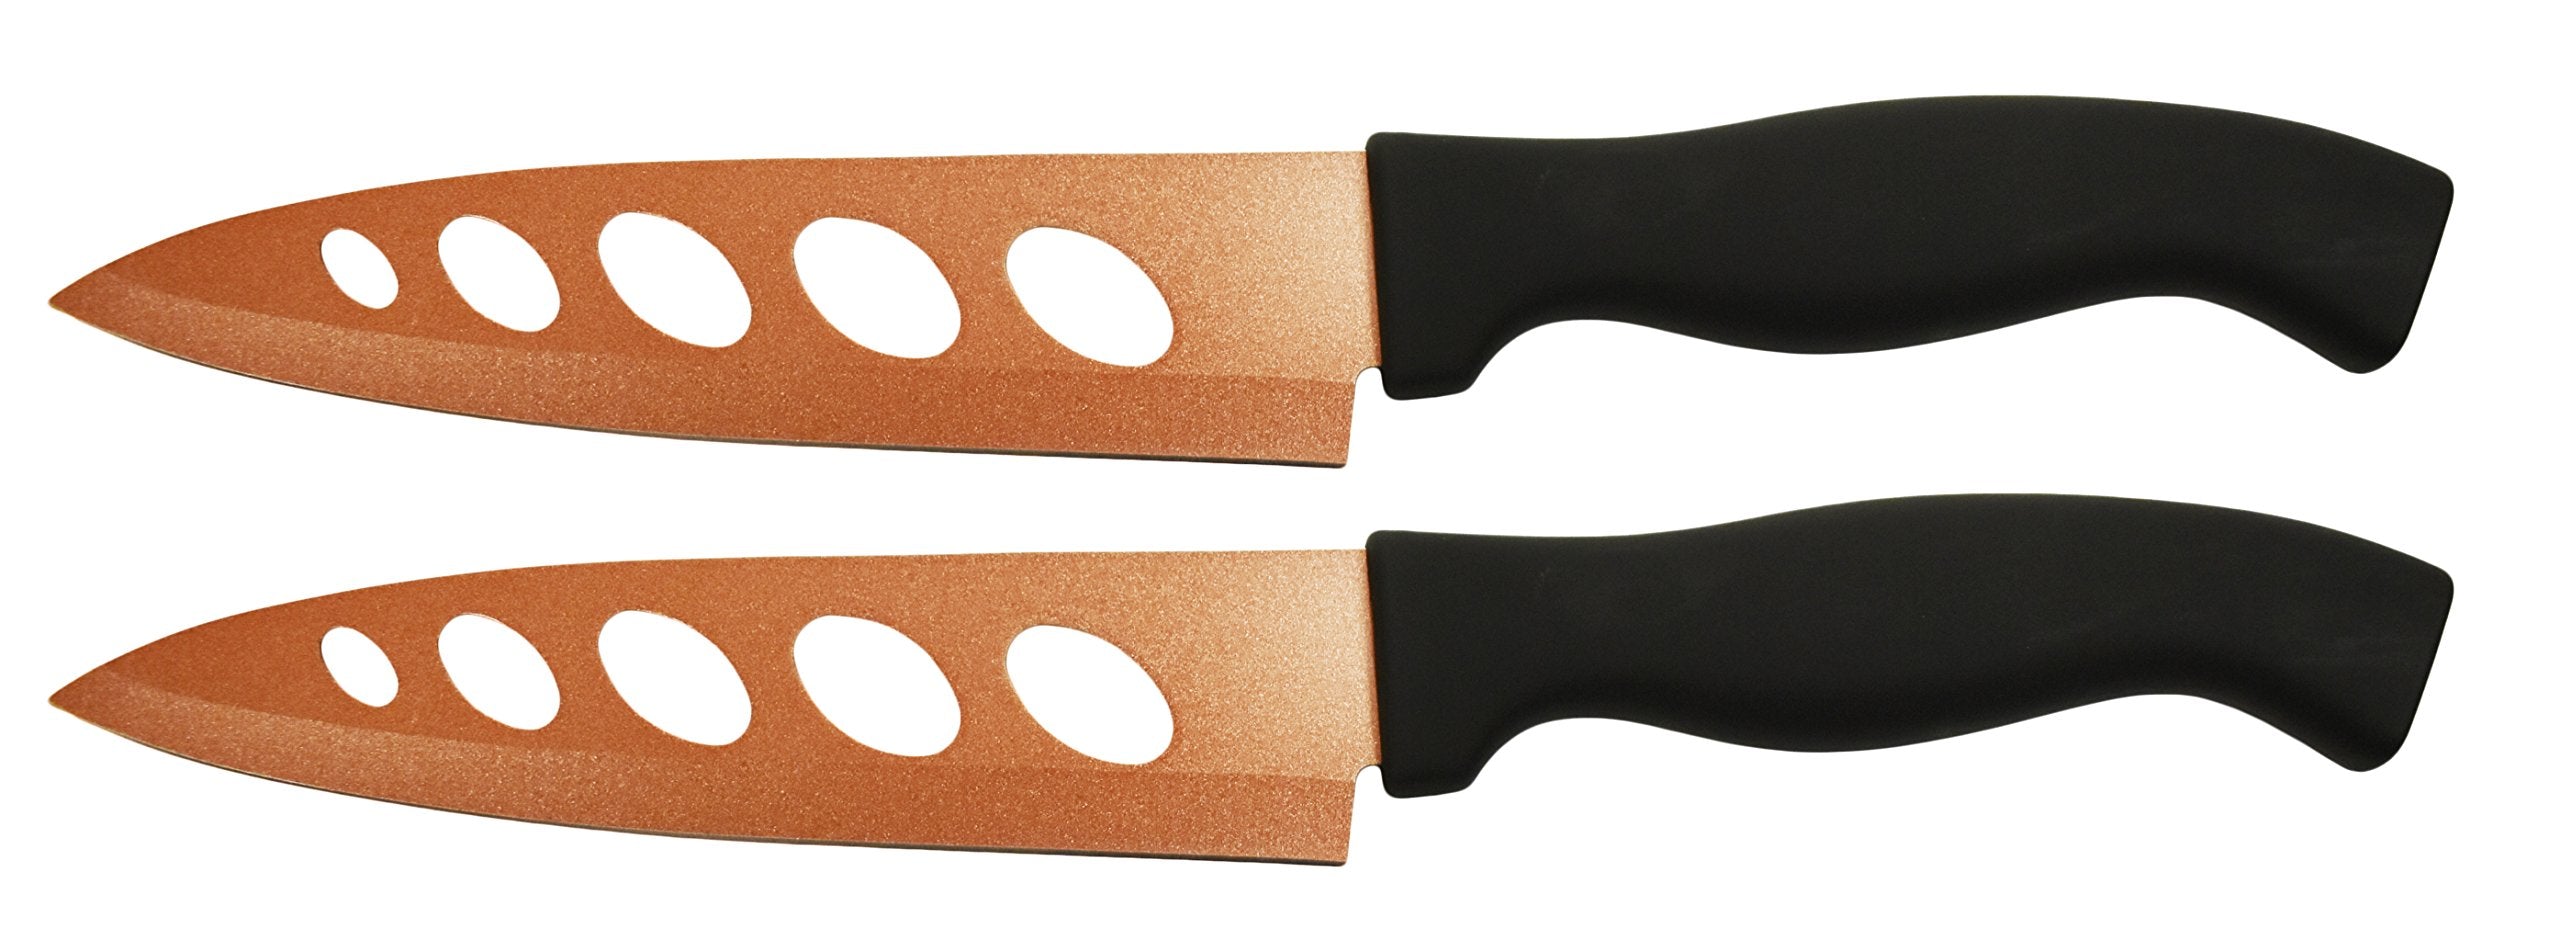 Copper Knife Never Needs Sharpening - COPPER KNIFE Stainless Steel Stays Sharp Forever, 12 Packs of 2